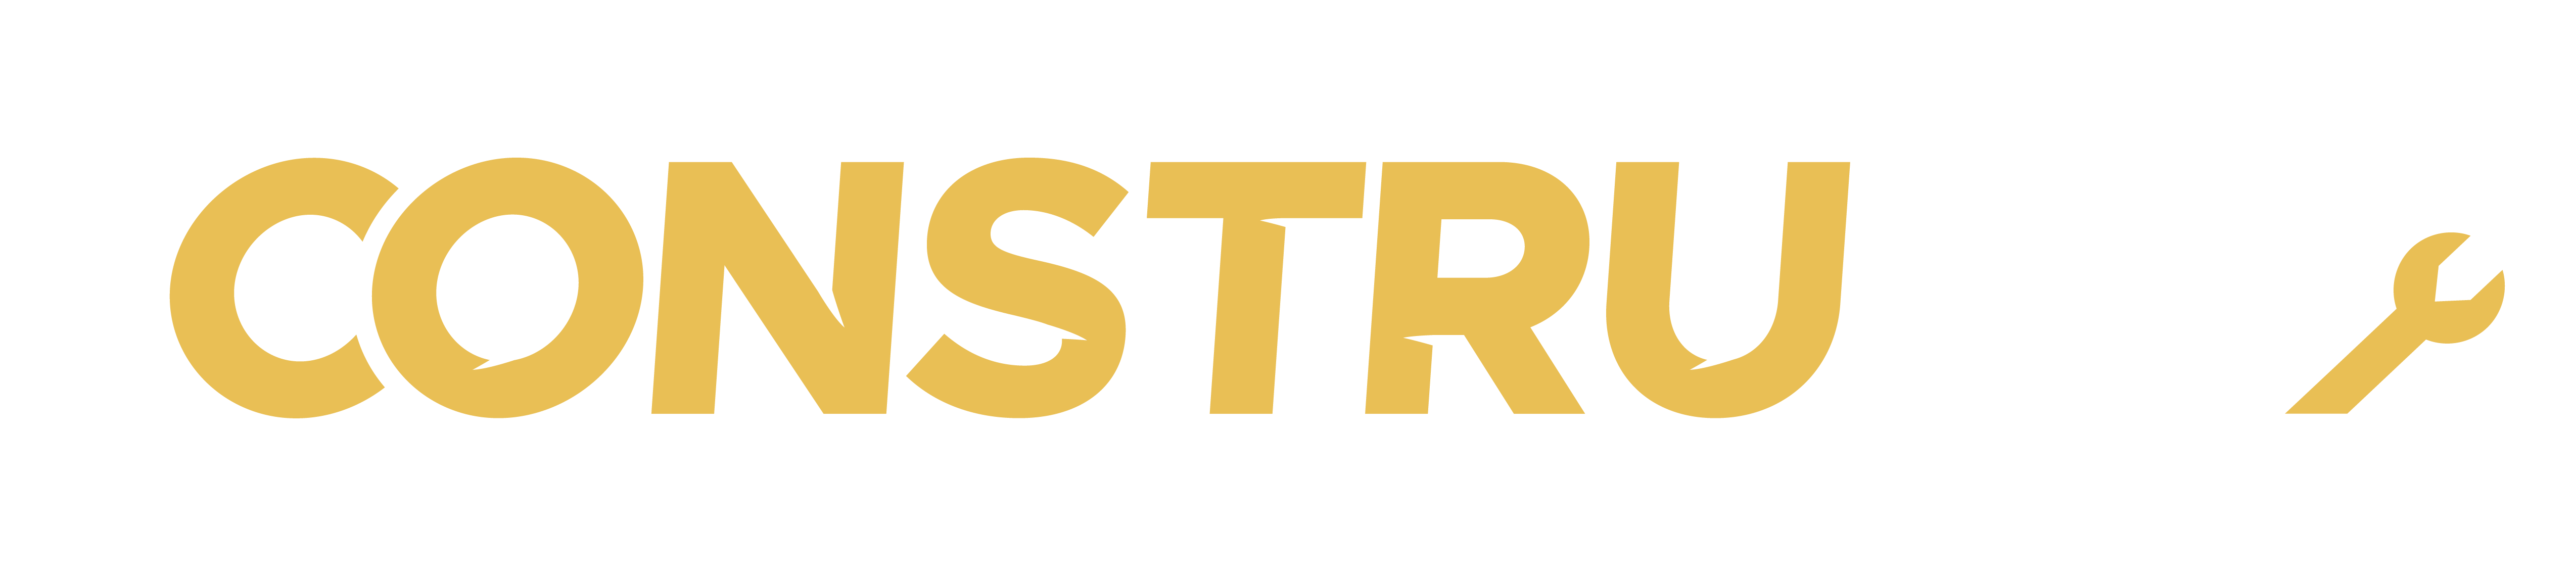 Imágen del logo de Construmec Santo tomé - Reparación de equipos y herramientas